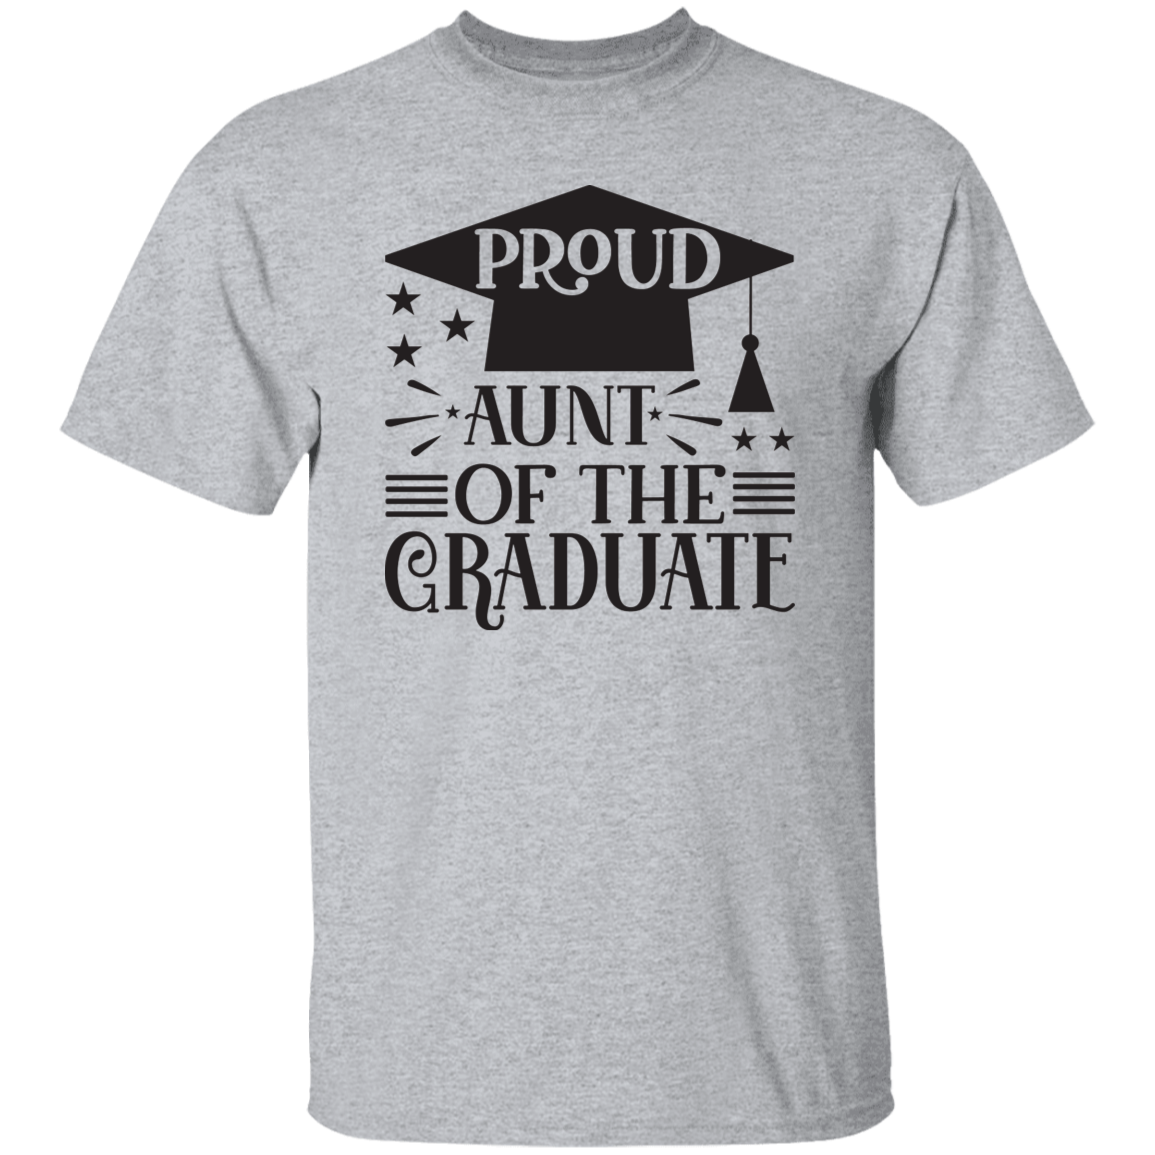 Proud Aunt of the Graduate G500 5.3 oz. T-Shirt